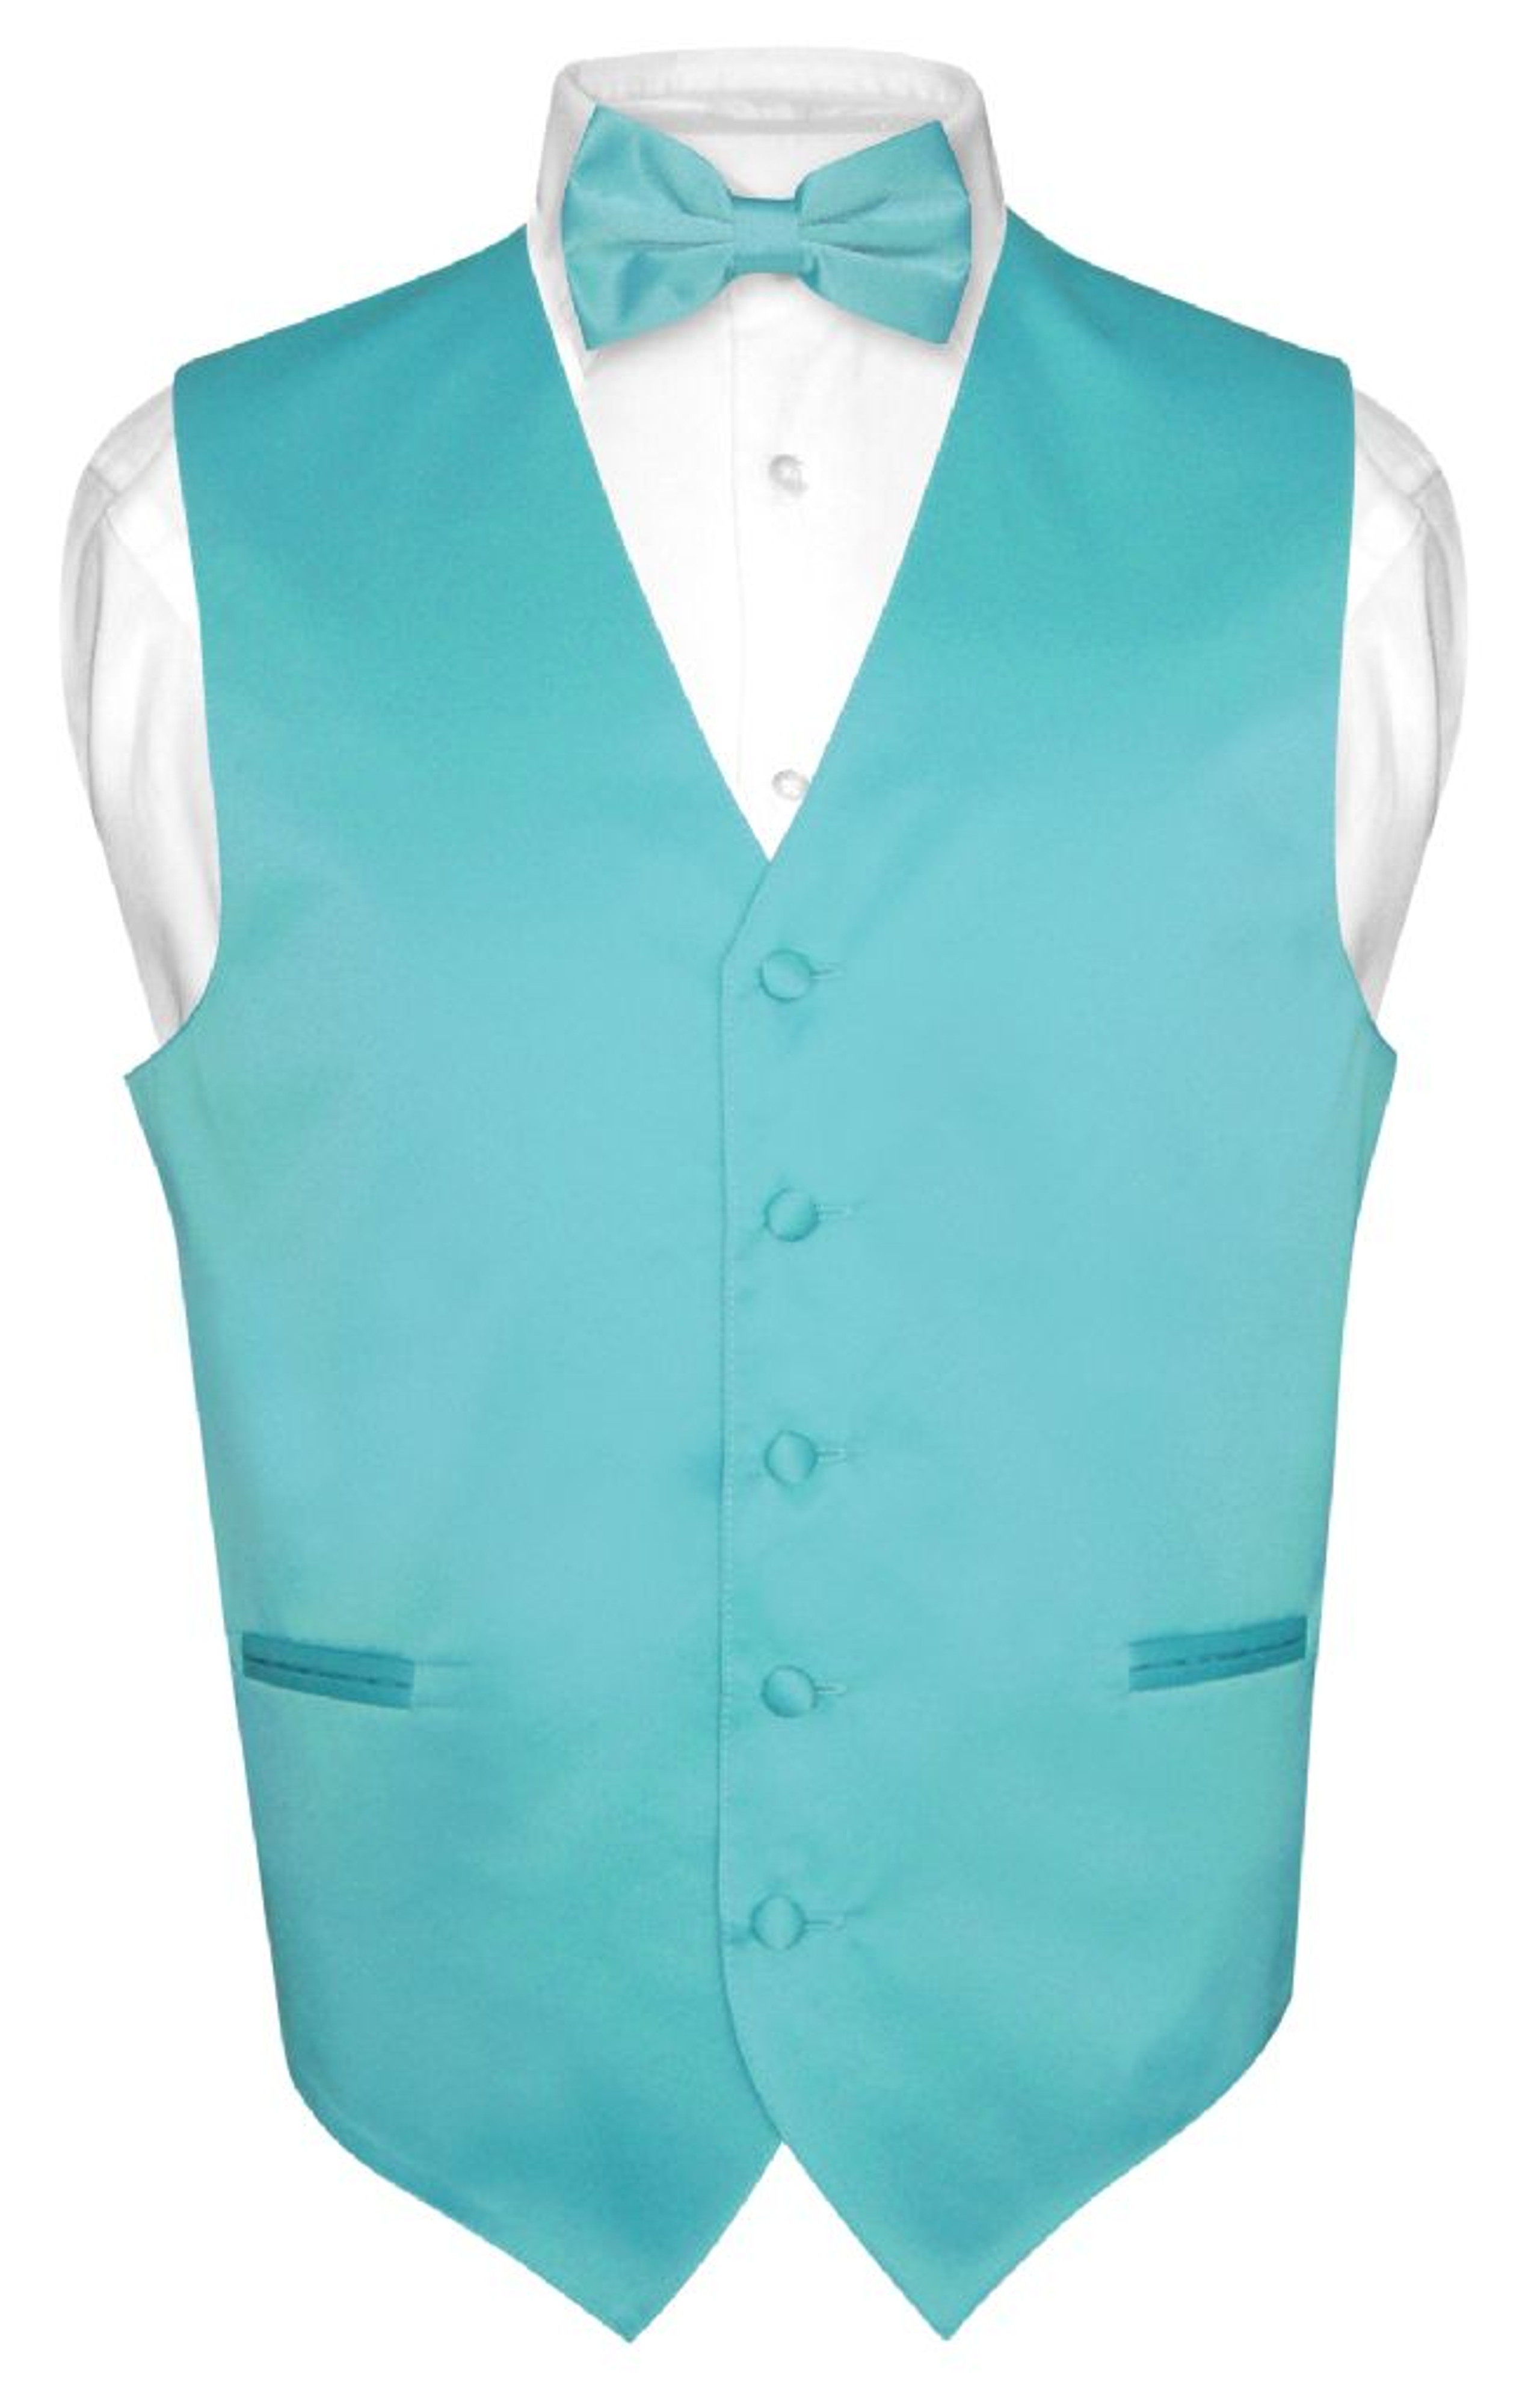 Mens Dress Vest & BowTie Solid Turquoise Aqua Blue Color Bow Tie Set